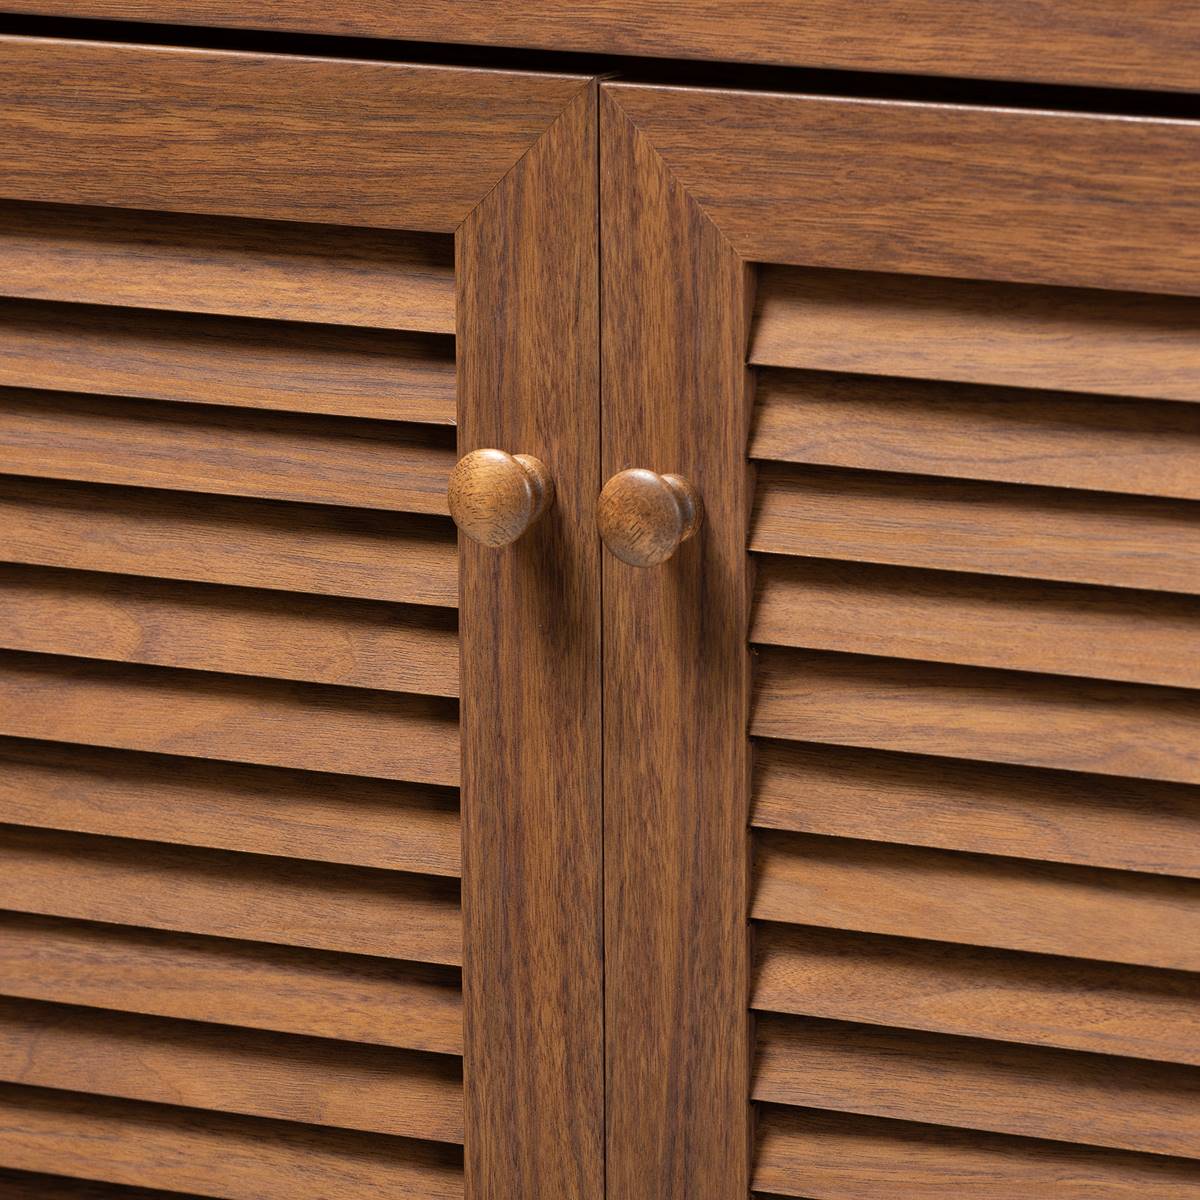 Baxton Studio Coolidge 11 Shelf Wooden Shoe Storage Cabinet